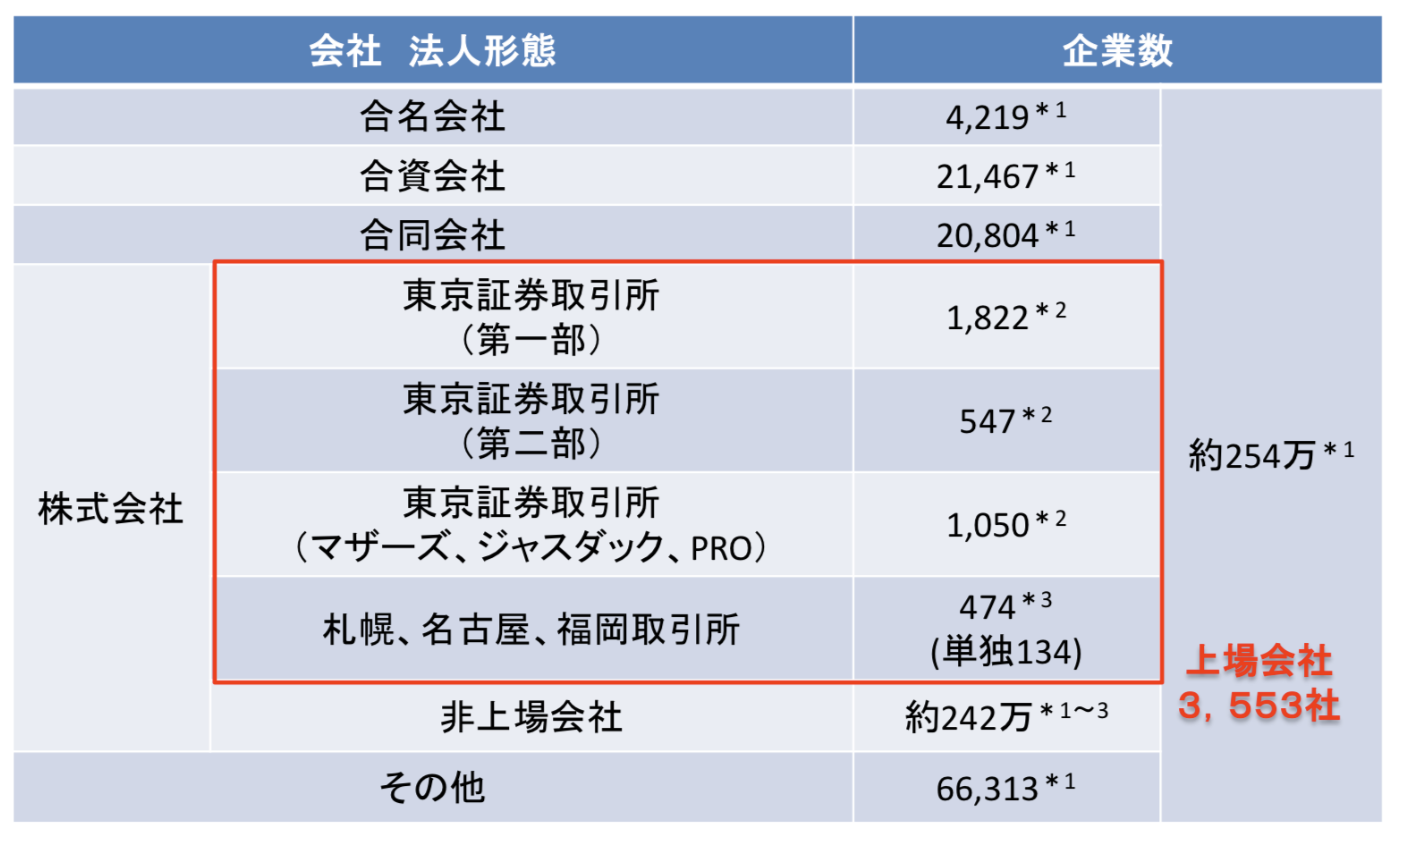 日本の上場企業数